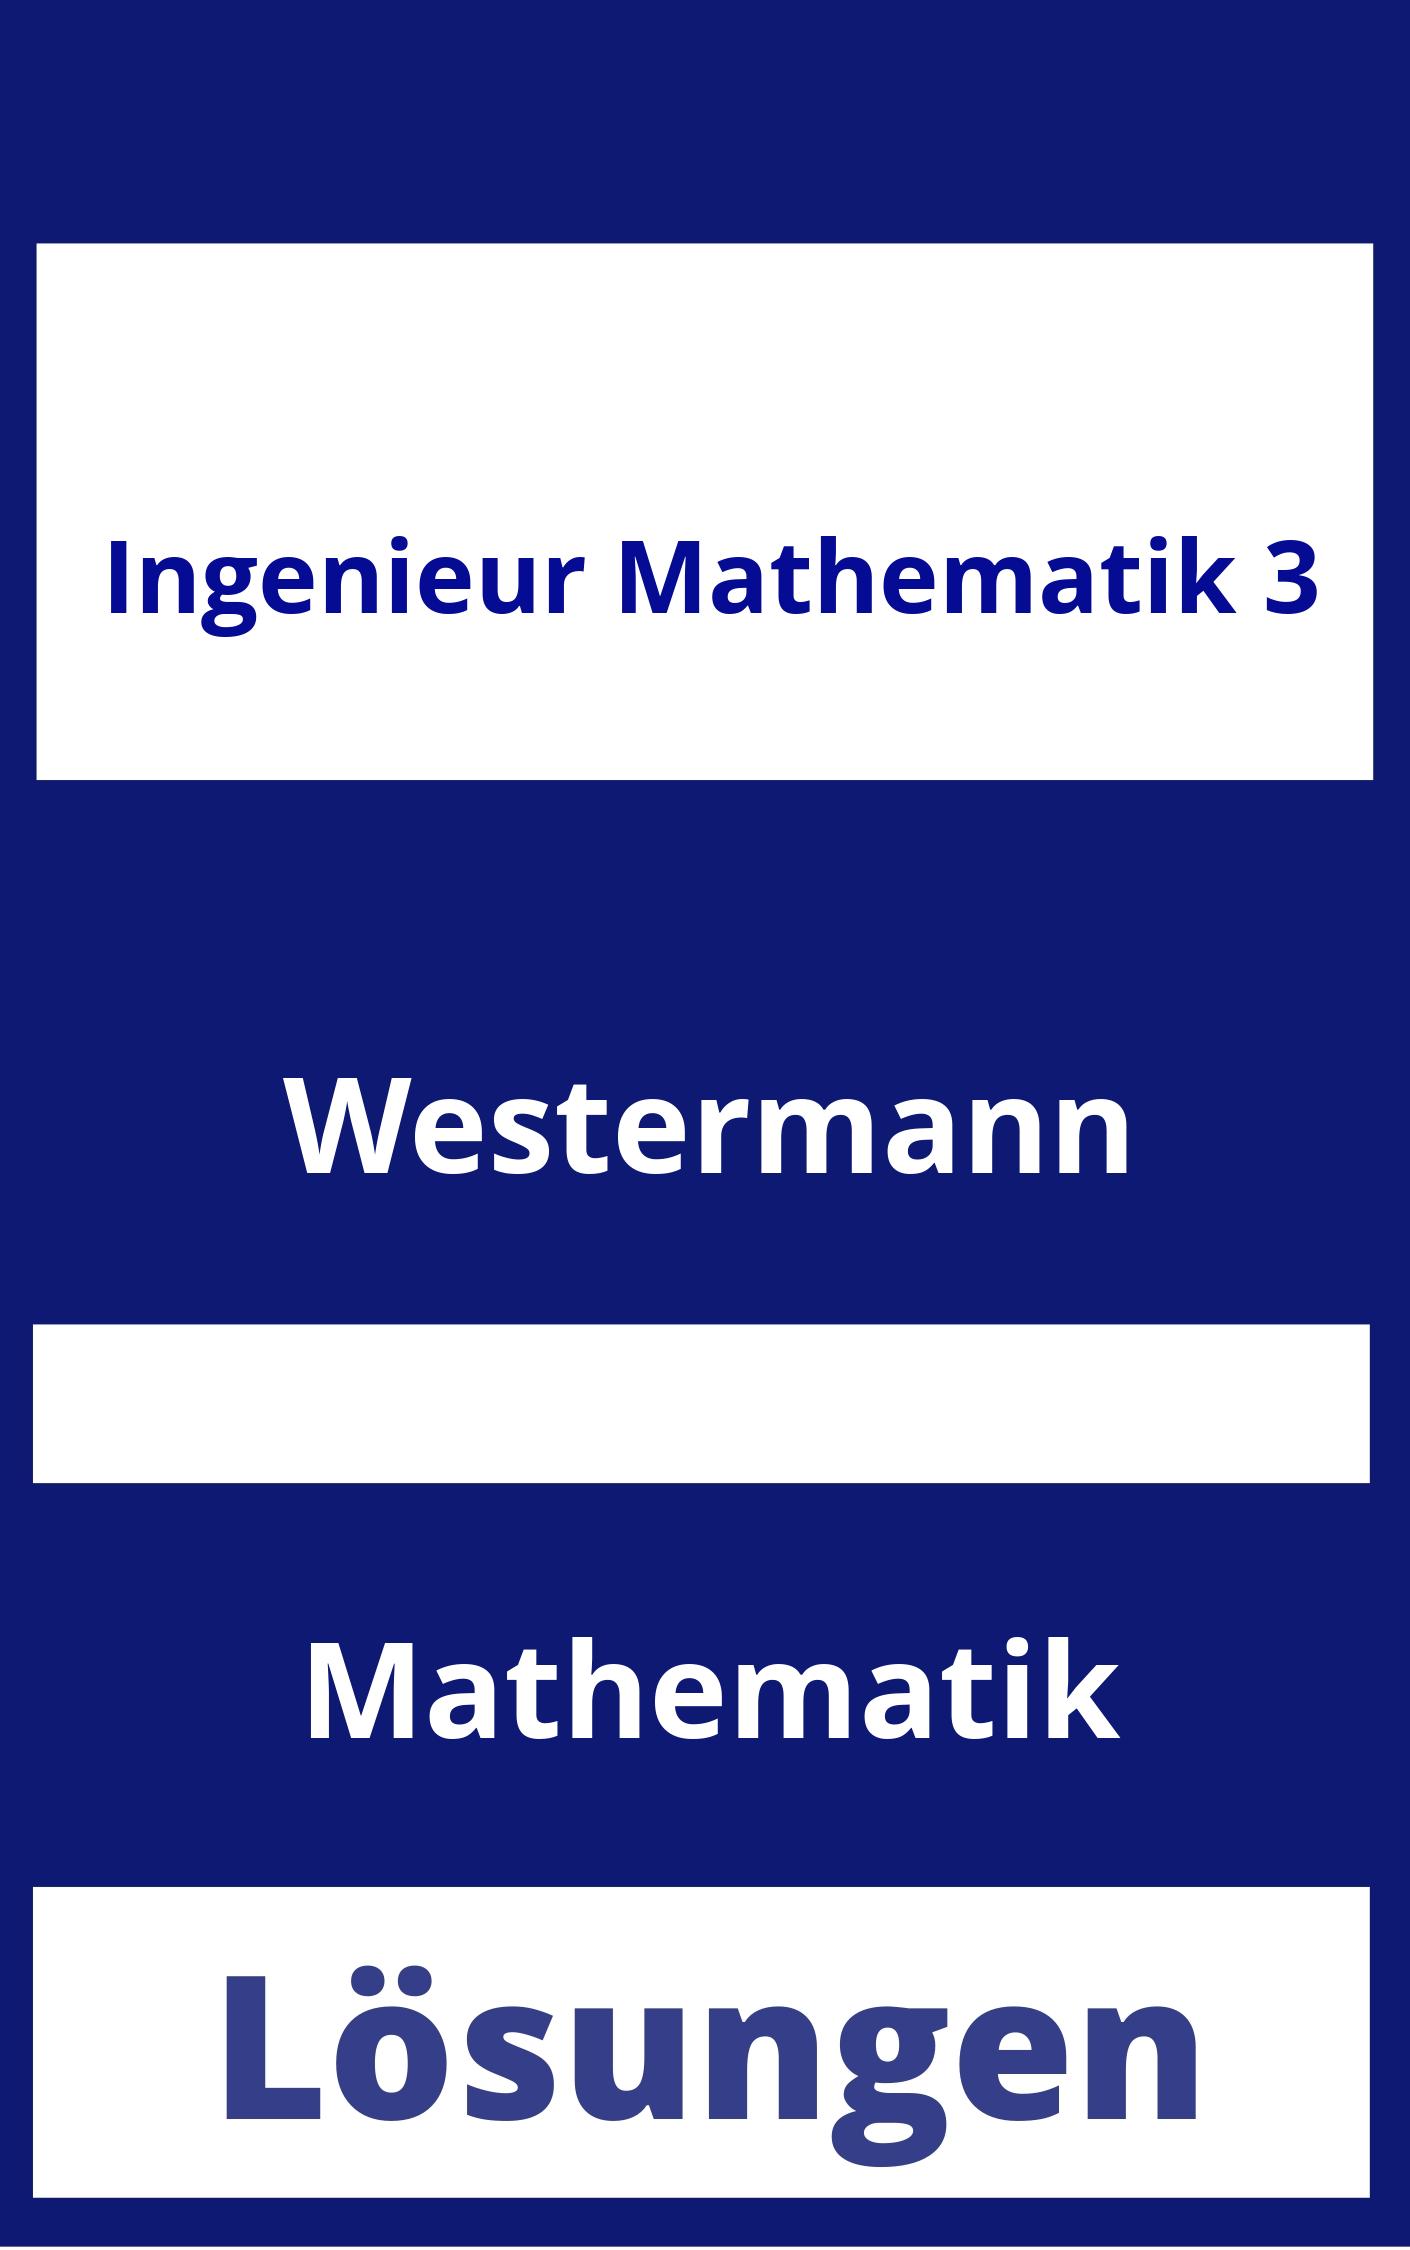 Ingenieur Mathematik 3 Lösungen PDF